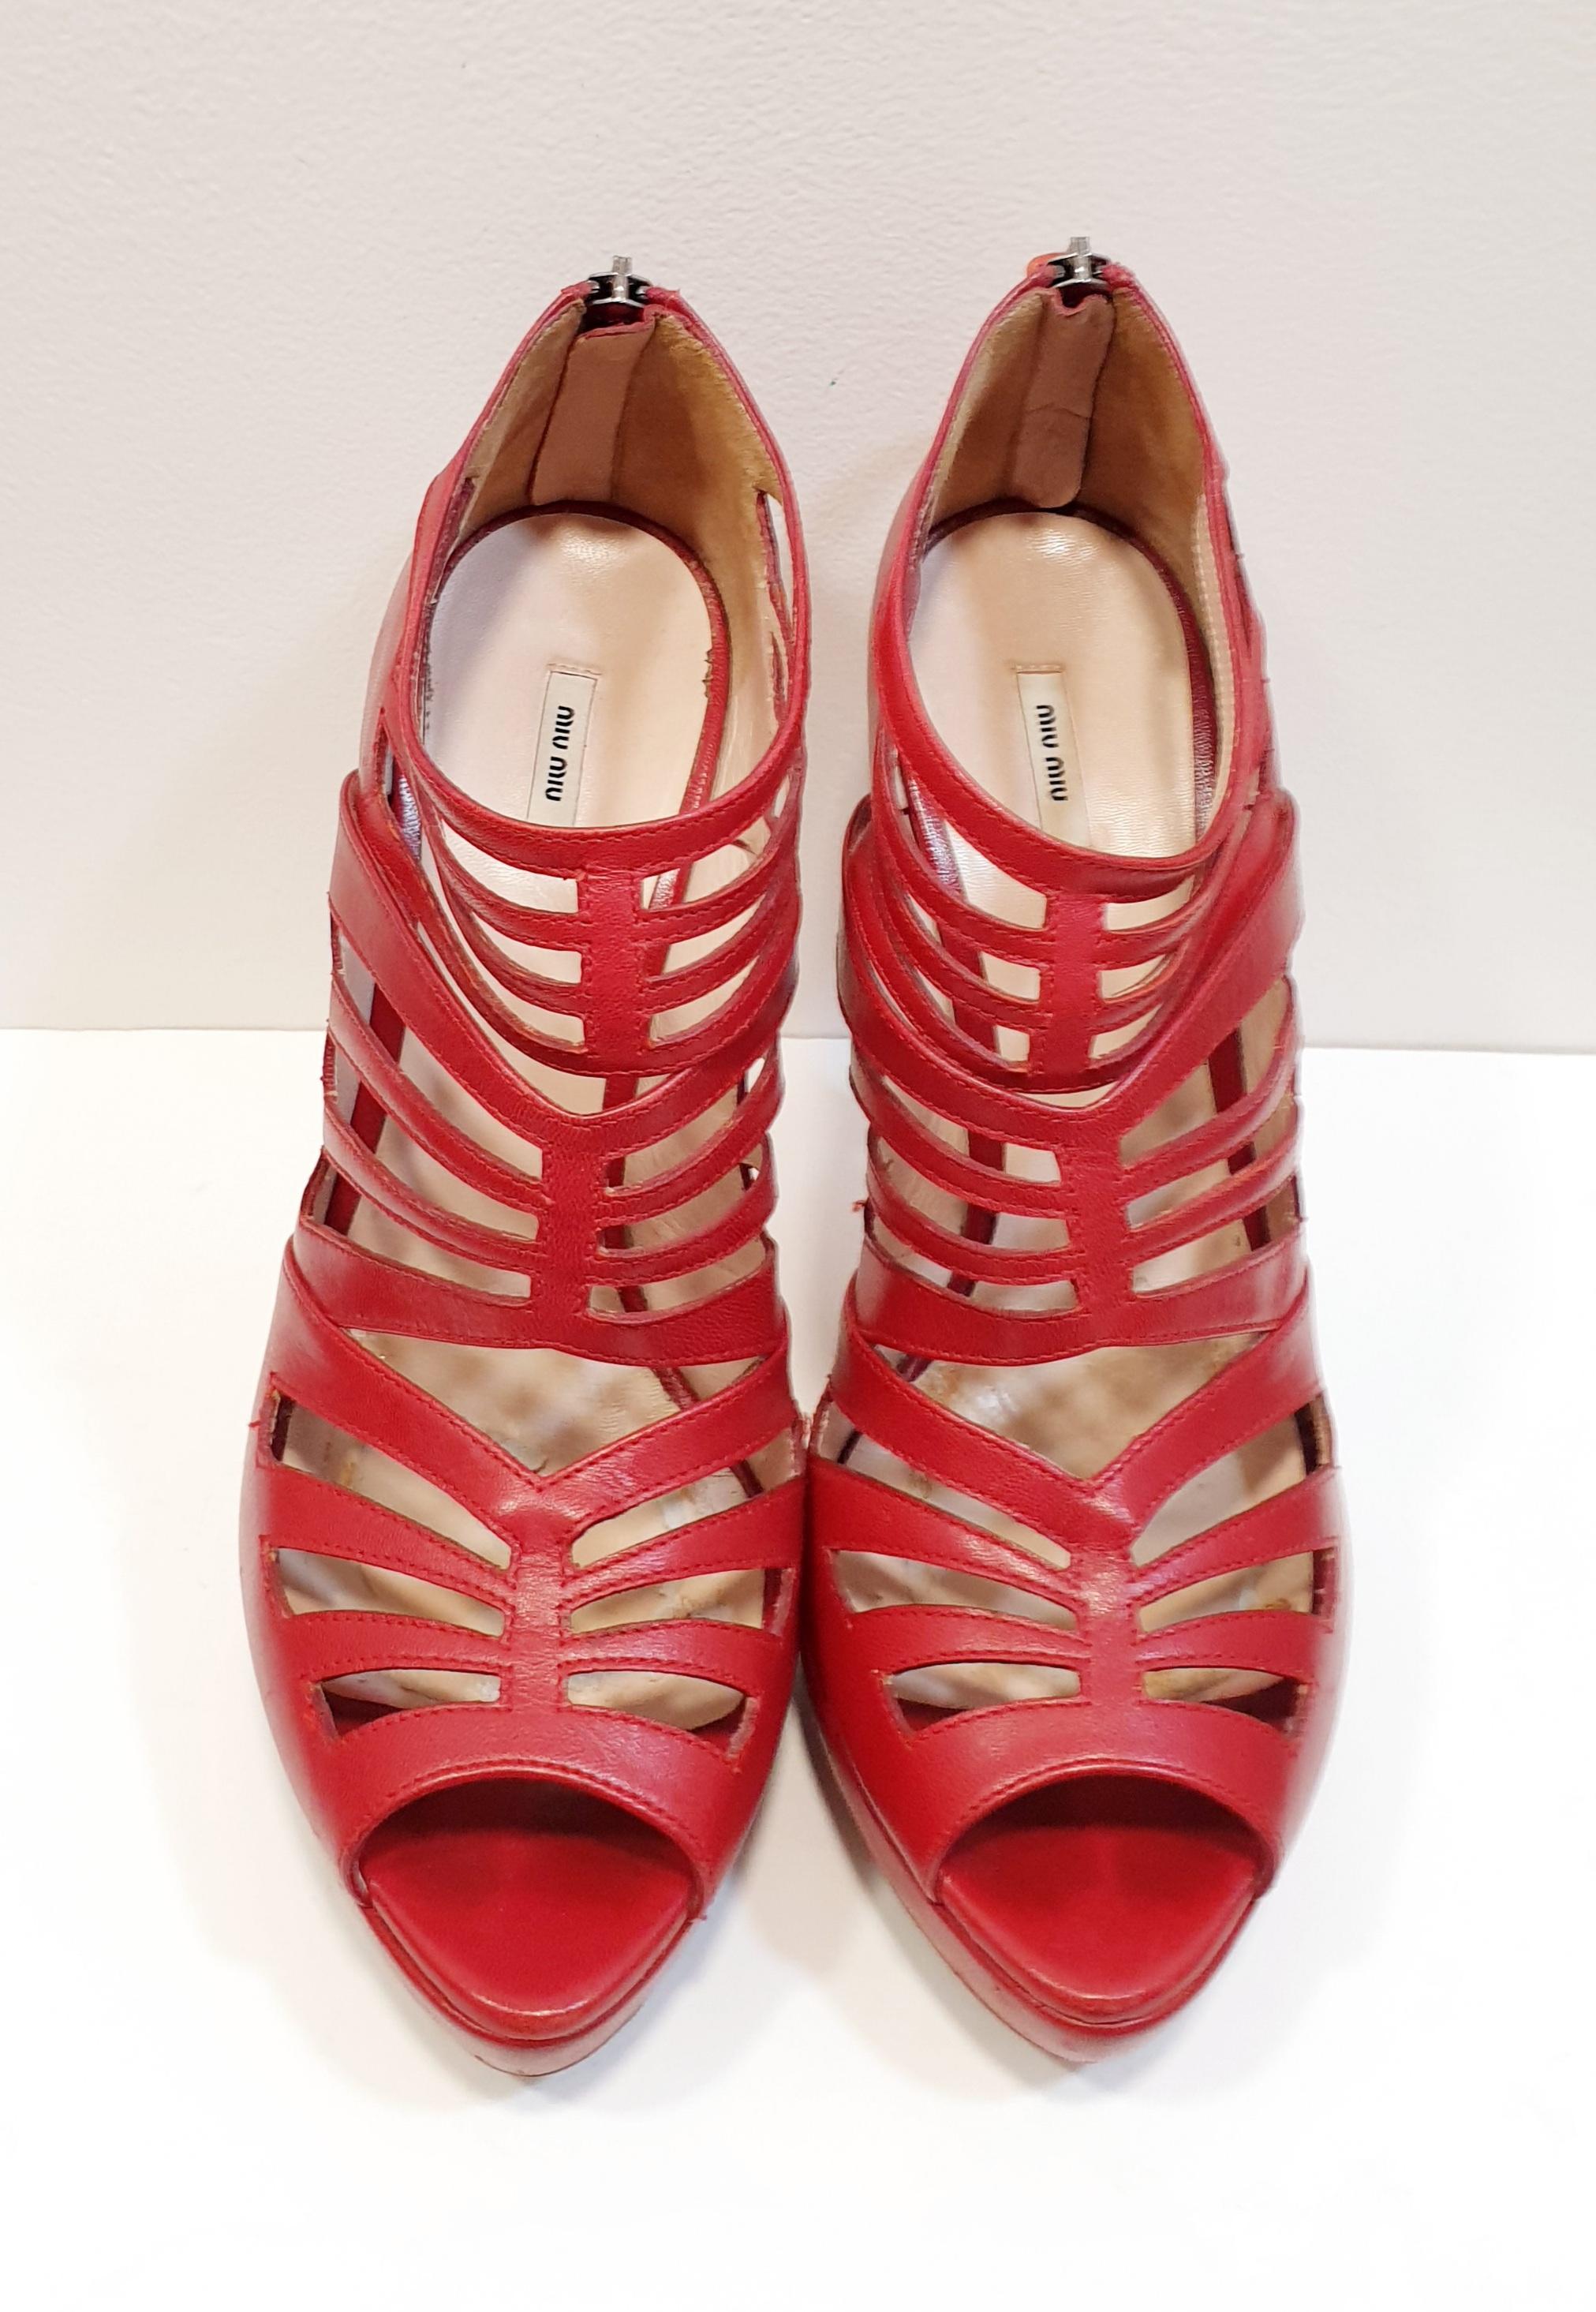 Roter offener Stiletto-Schuh von Miu Miu
Die Sohlen werden brandneu und wasserdicht eingestellt. 
Jahr 2006
Die Originalverpackung ist nicht vorhanden.
Miu Miu ist die hemmungsloseste Darstellung der Kreativität von Miuccia Prada. Bewusst weit